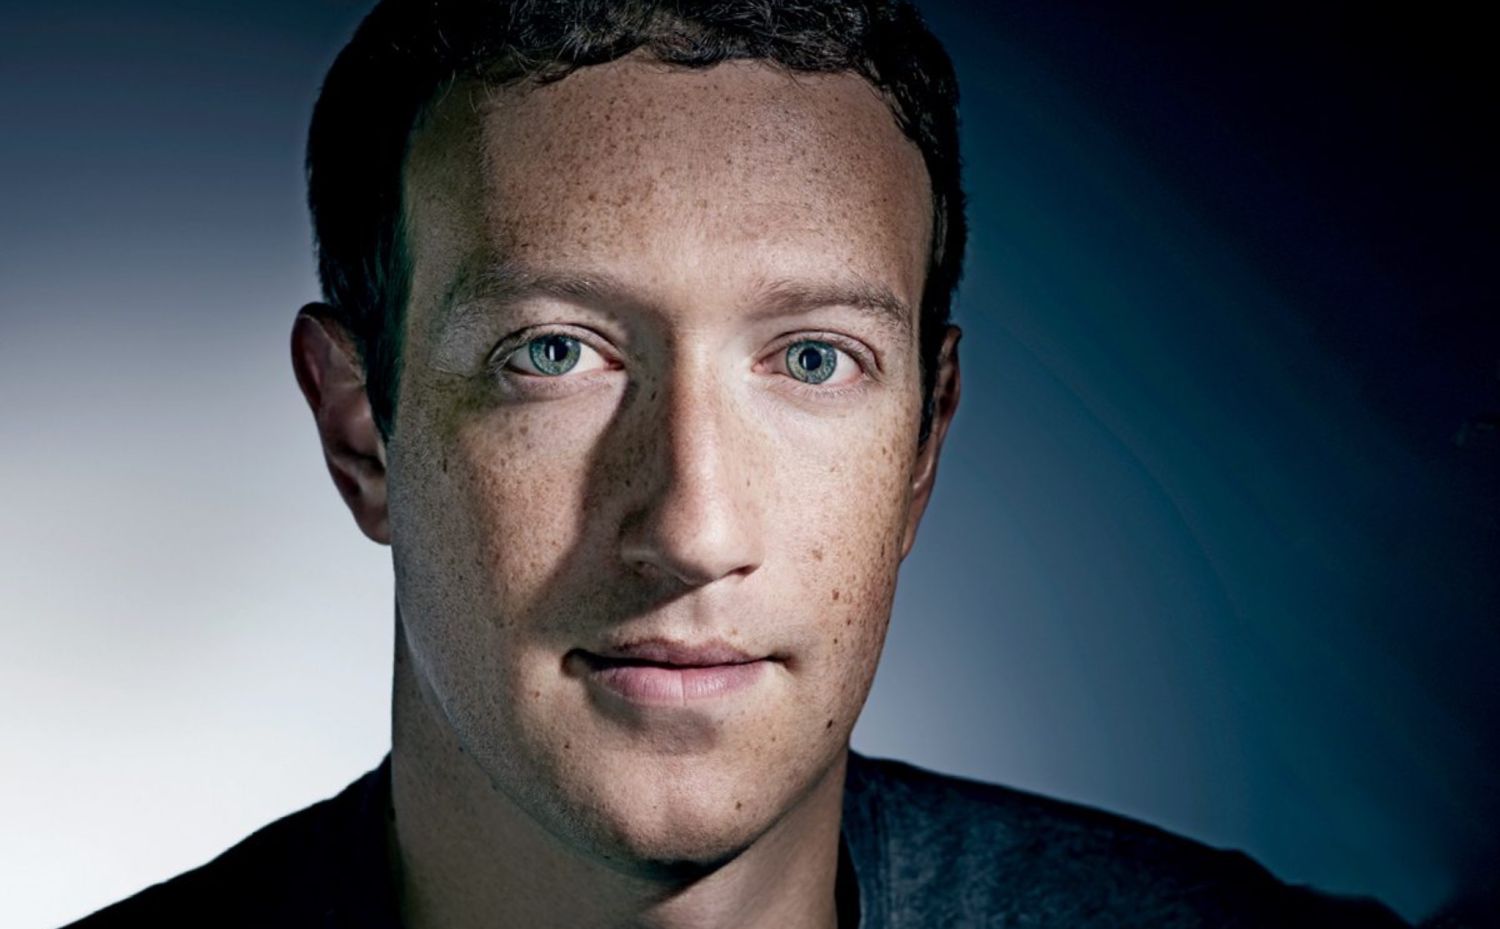 La historia de Mark Zuckerberg y Facebook